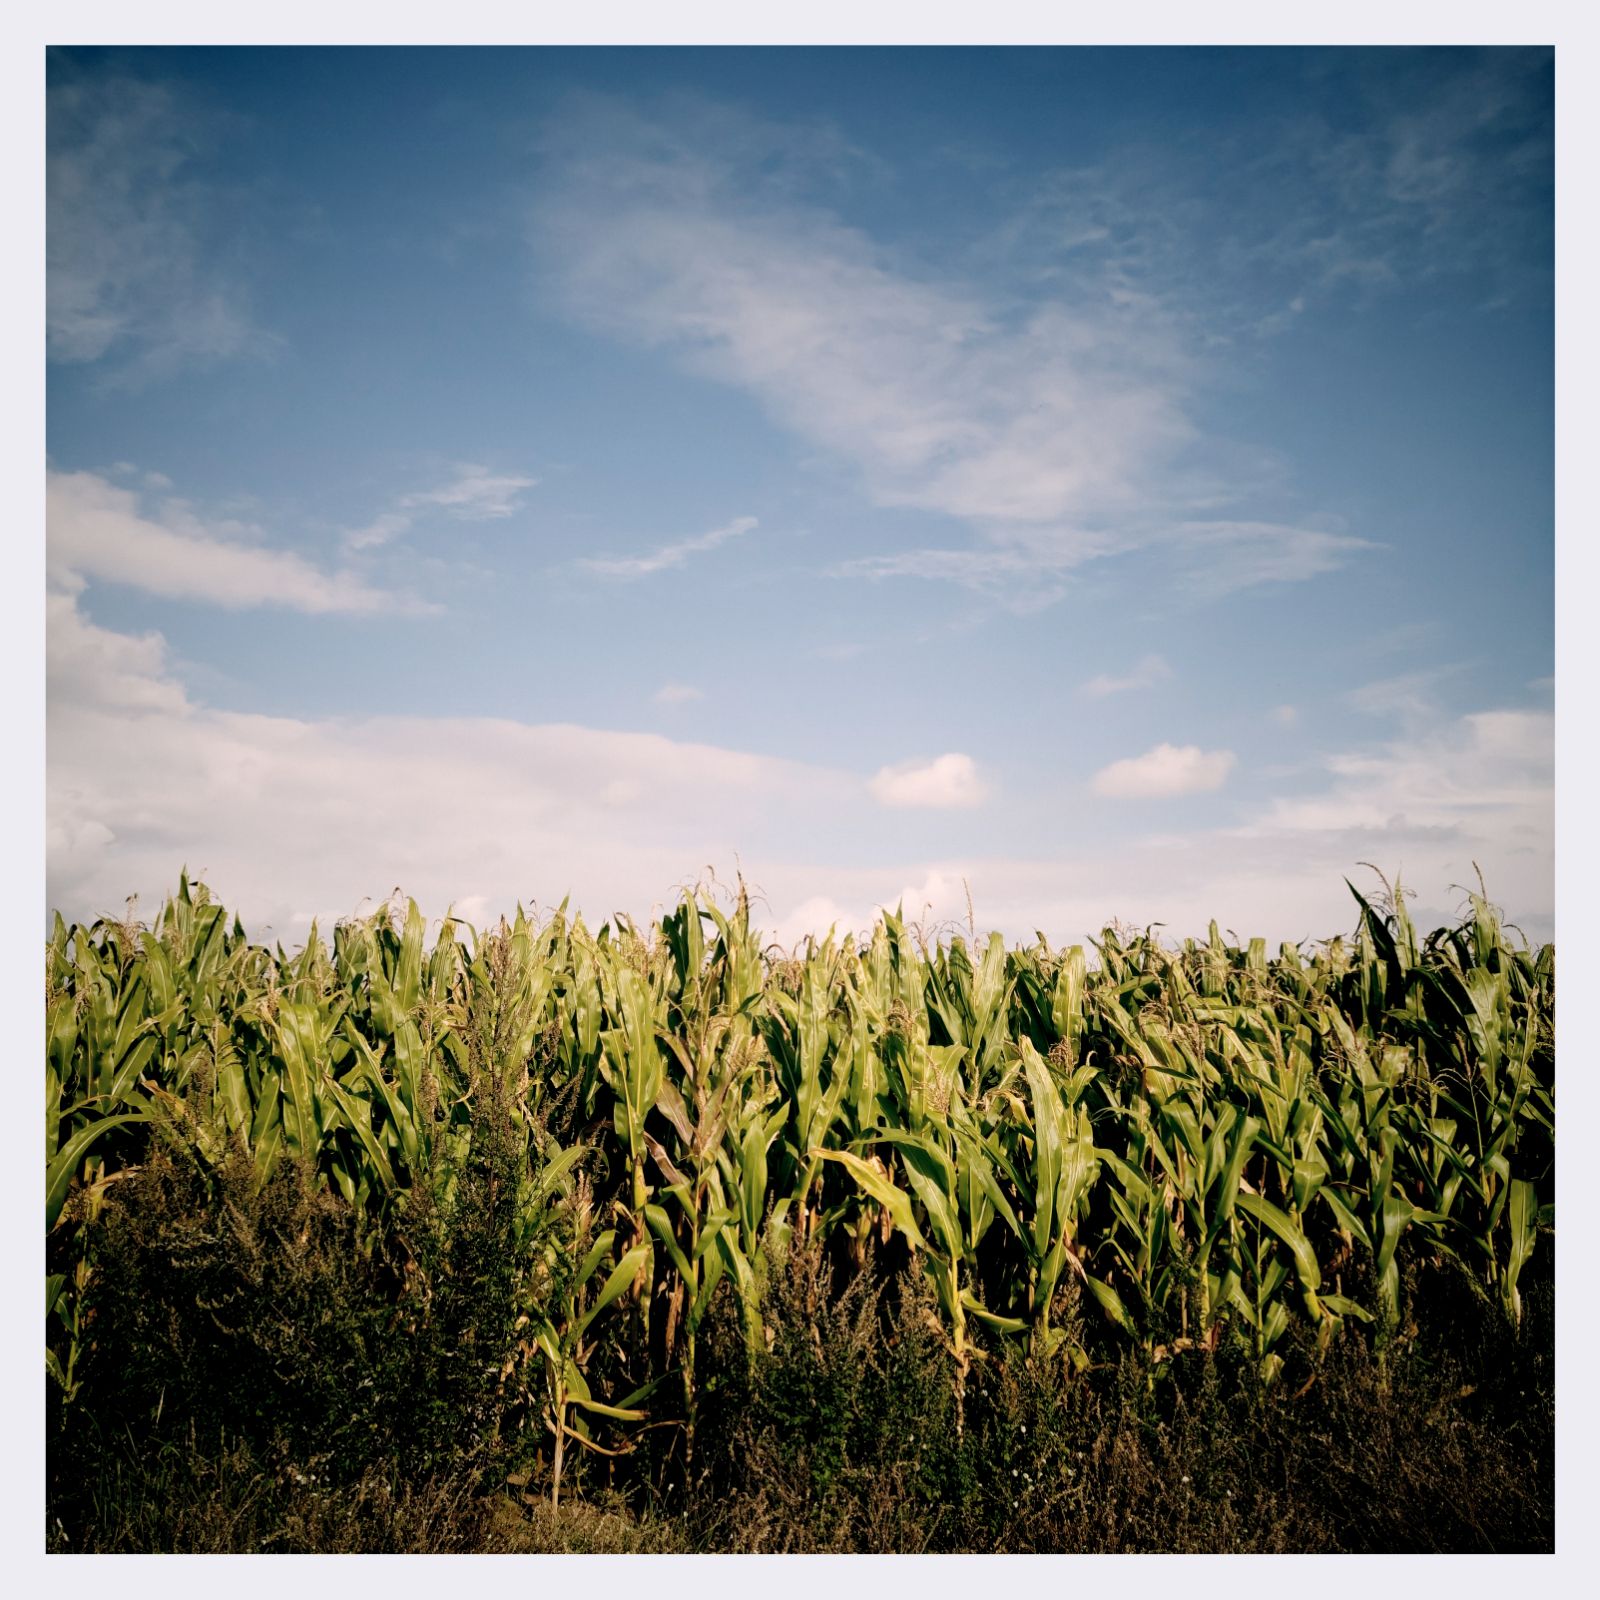 A corn field in late summer sun.